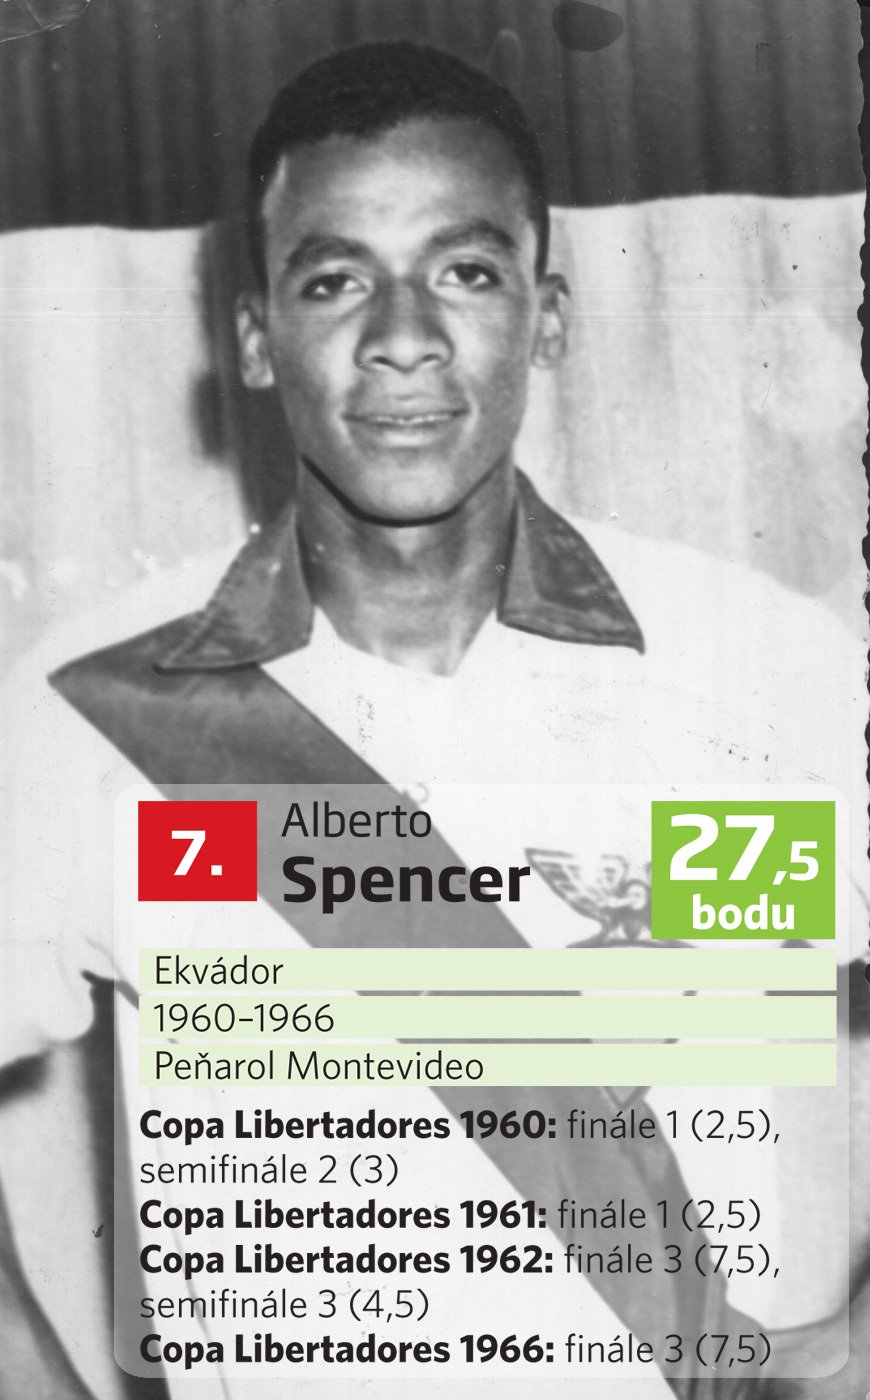 Alberto Spencer